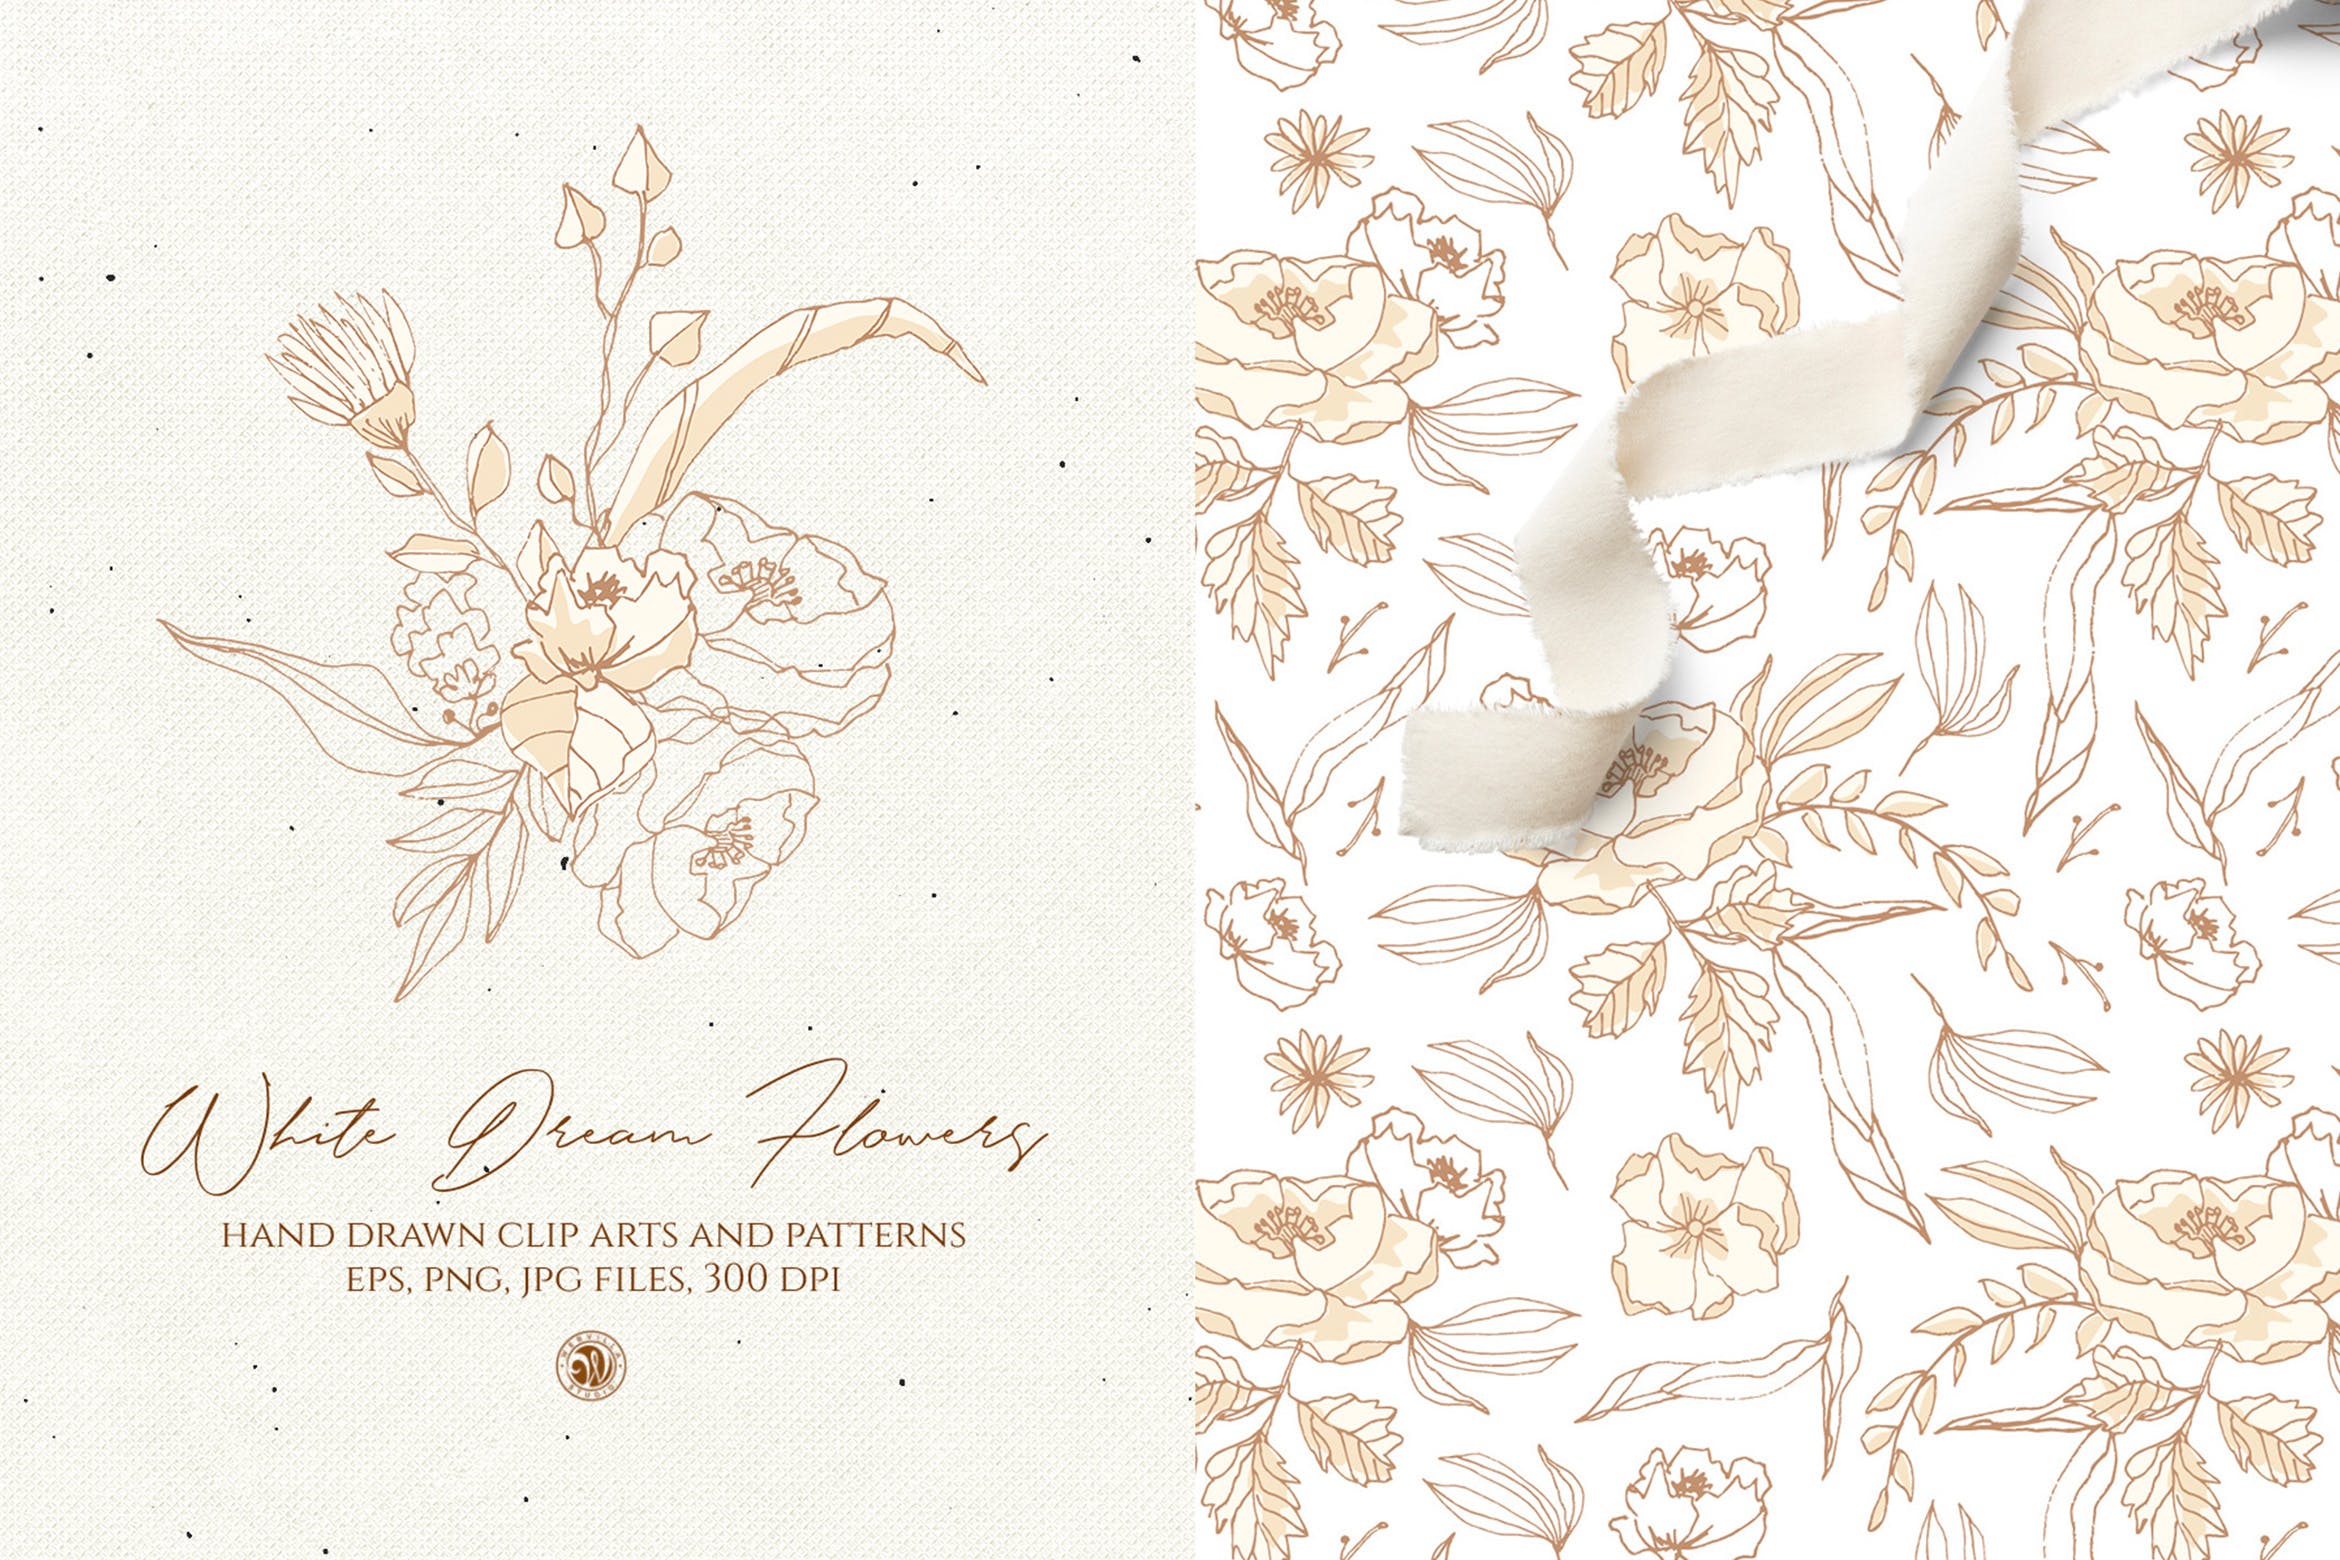 白色梦幻花卉手绘图案矢量素材 White Dream Flowers插图